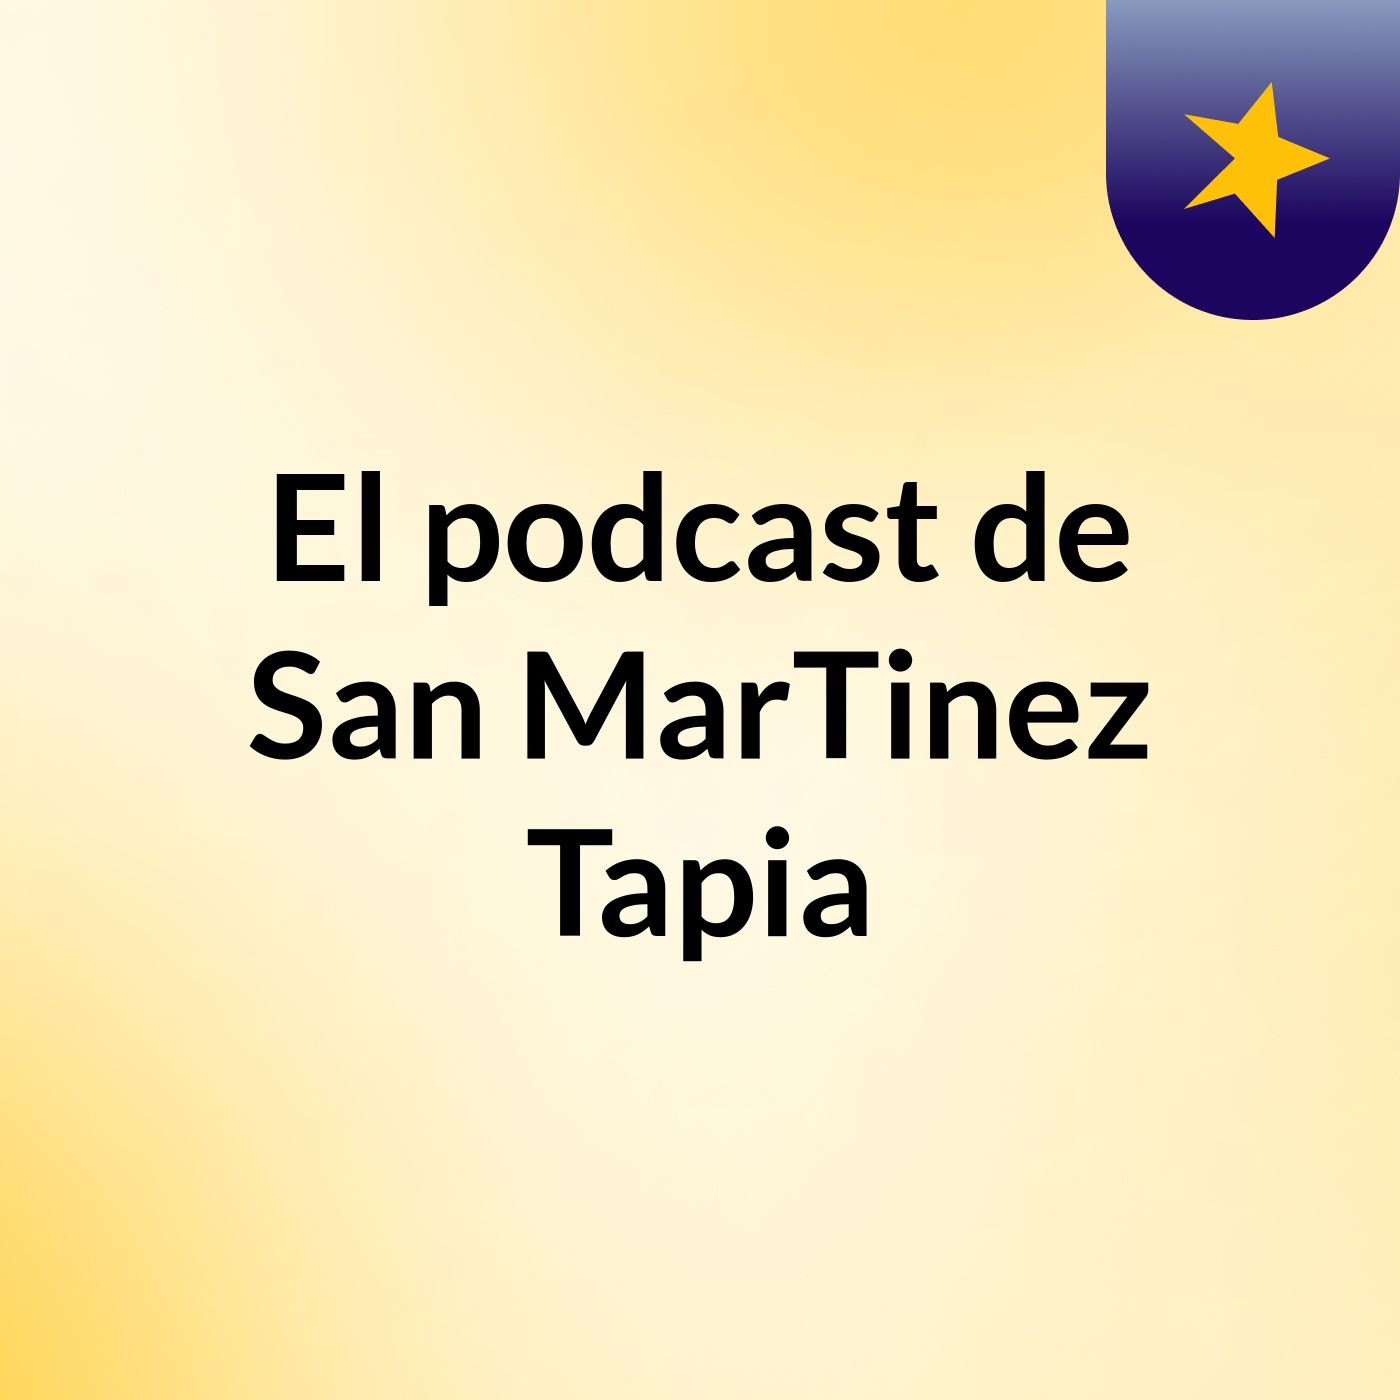 El podcast de San MarTinez Tapia